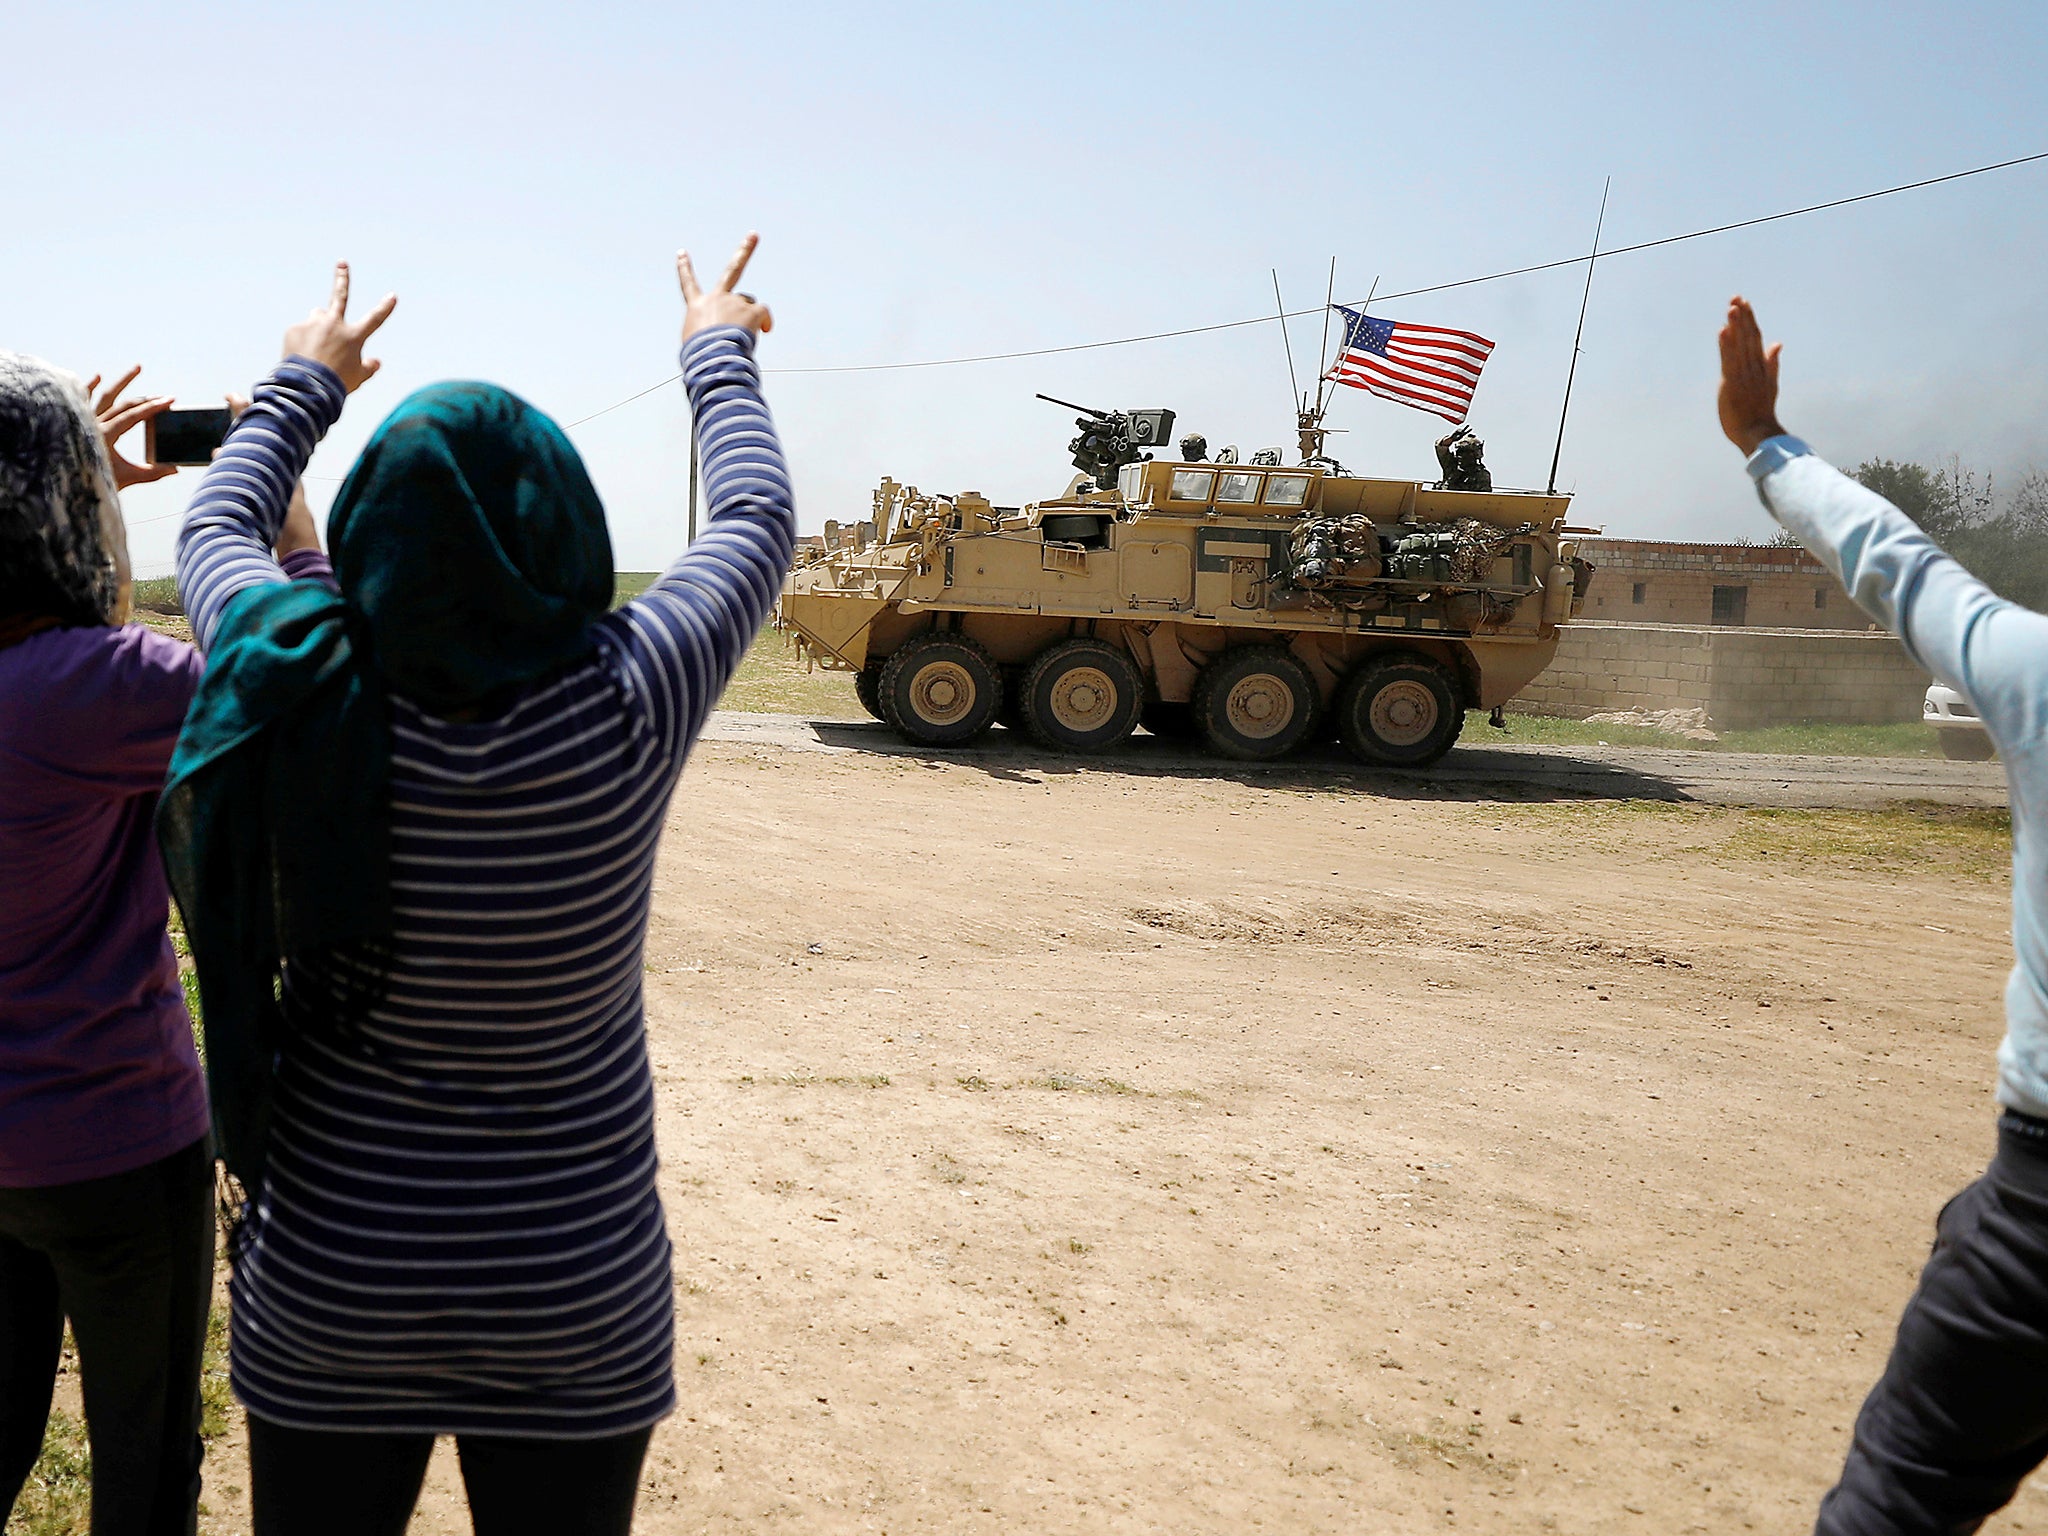 Οι Κούρδοι λένε ότι αποχωρούν οι αμερικανικές δυνάμεις από την Συρία ανατολικά του Ευφράτη εν όψει τουρκικής εισβολής: